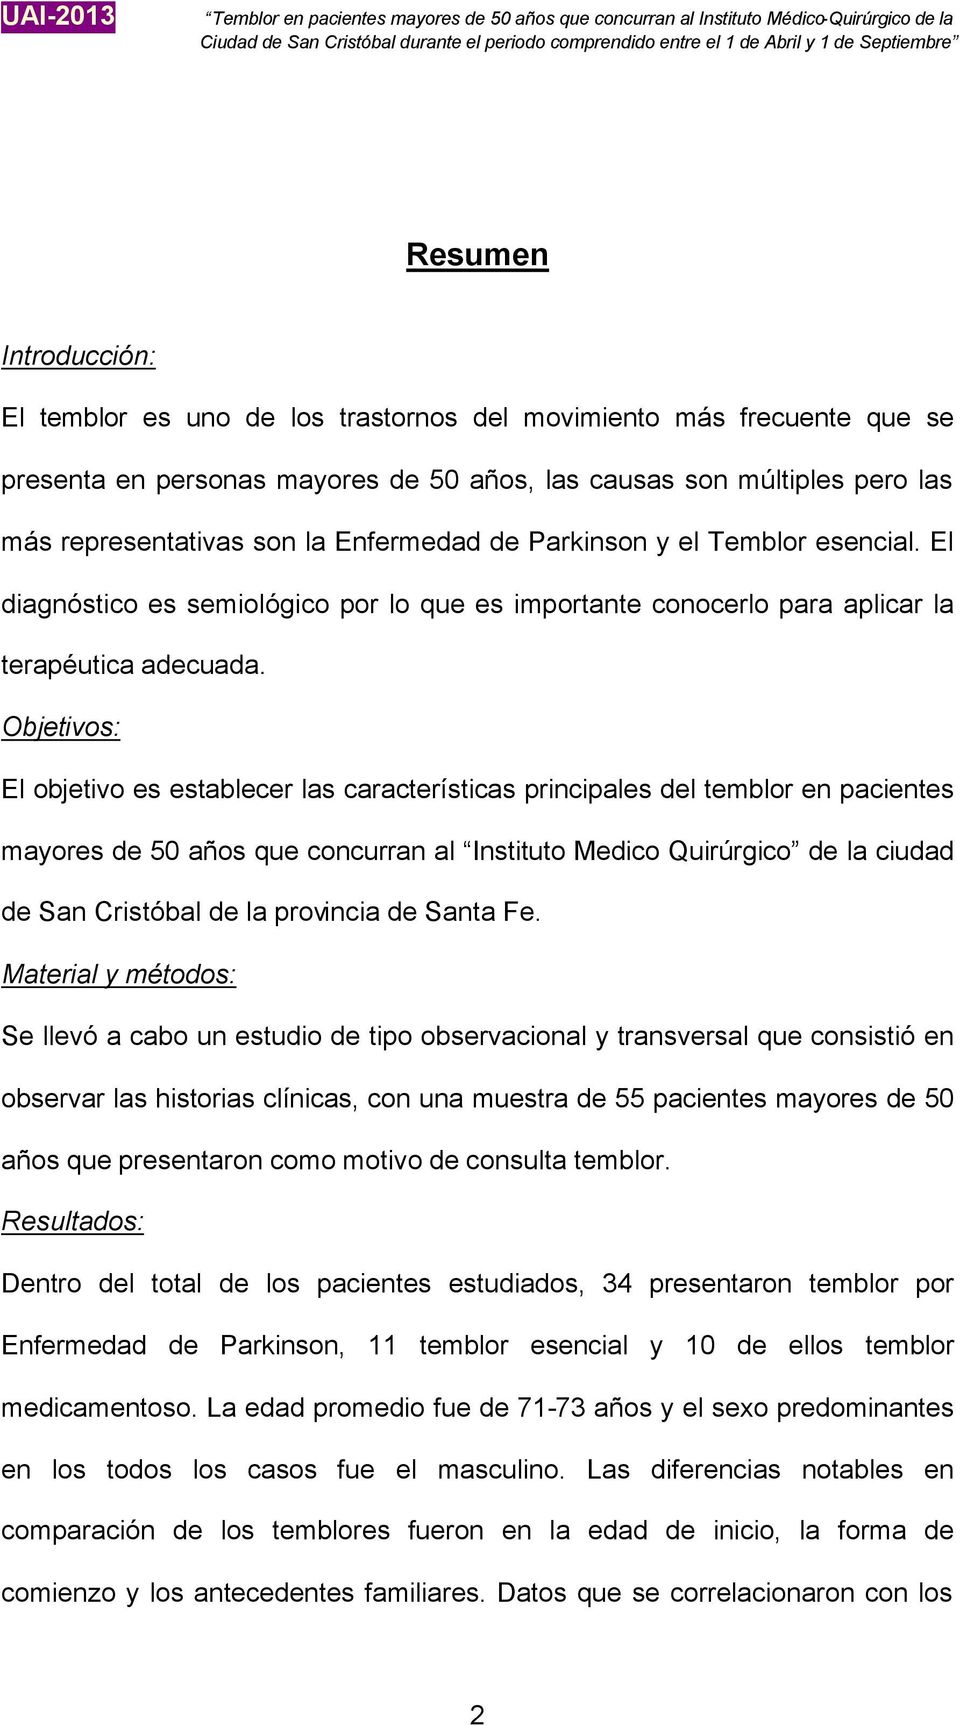 Objetivos: El objetivo es establecer las características principales del temblor en pacientes mayores de 50 años que concurran al Instituto Medico Quirúrgico de la ciudad de San Cristóbal de la